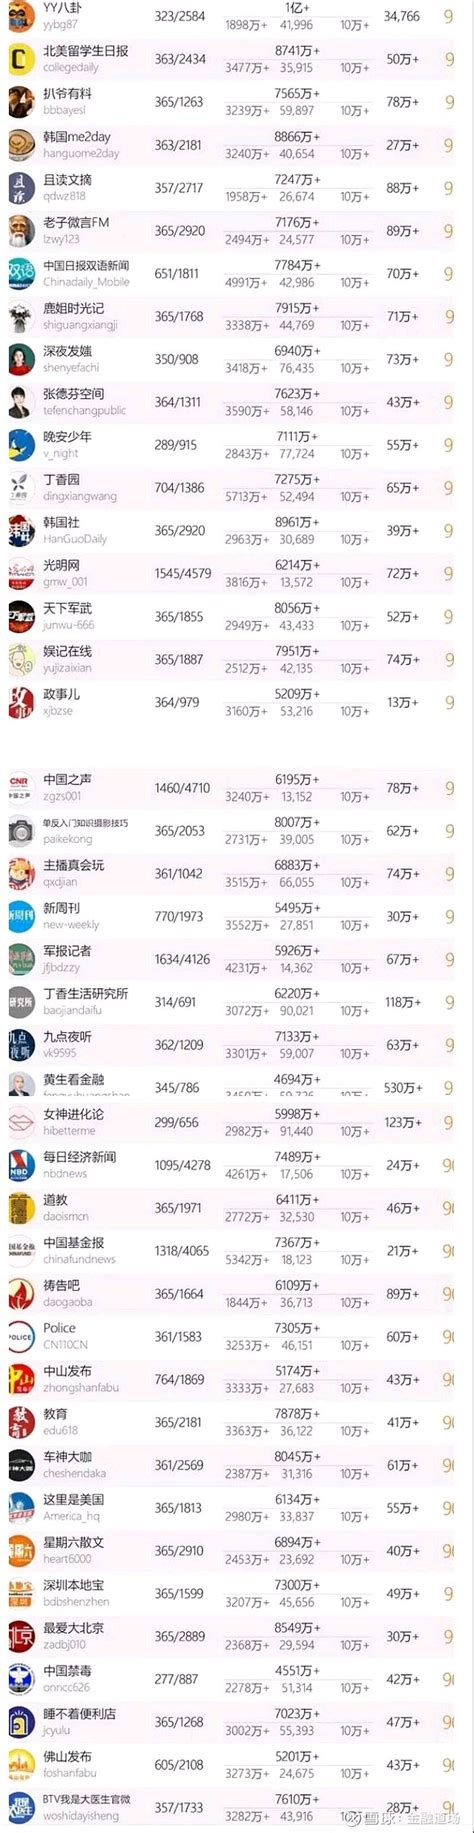 中国微信500强排名榜完整榜单 十大微信公众号排名榜-中国微信500强排名榜(阅读量排序)微信公众号如今已经成为了了解新闻资讯最快的渠道之一 ...